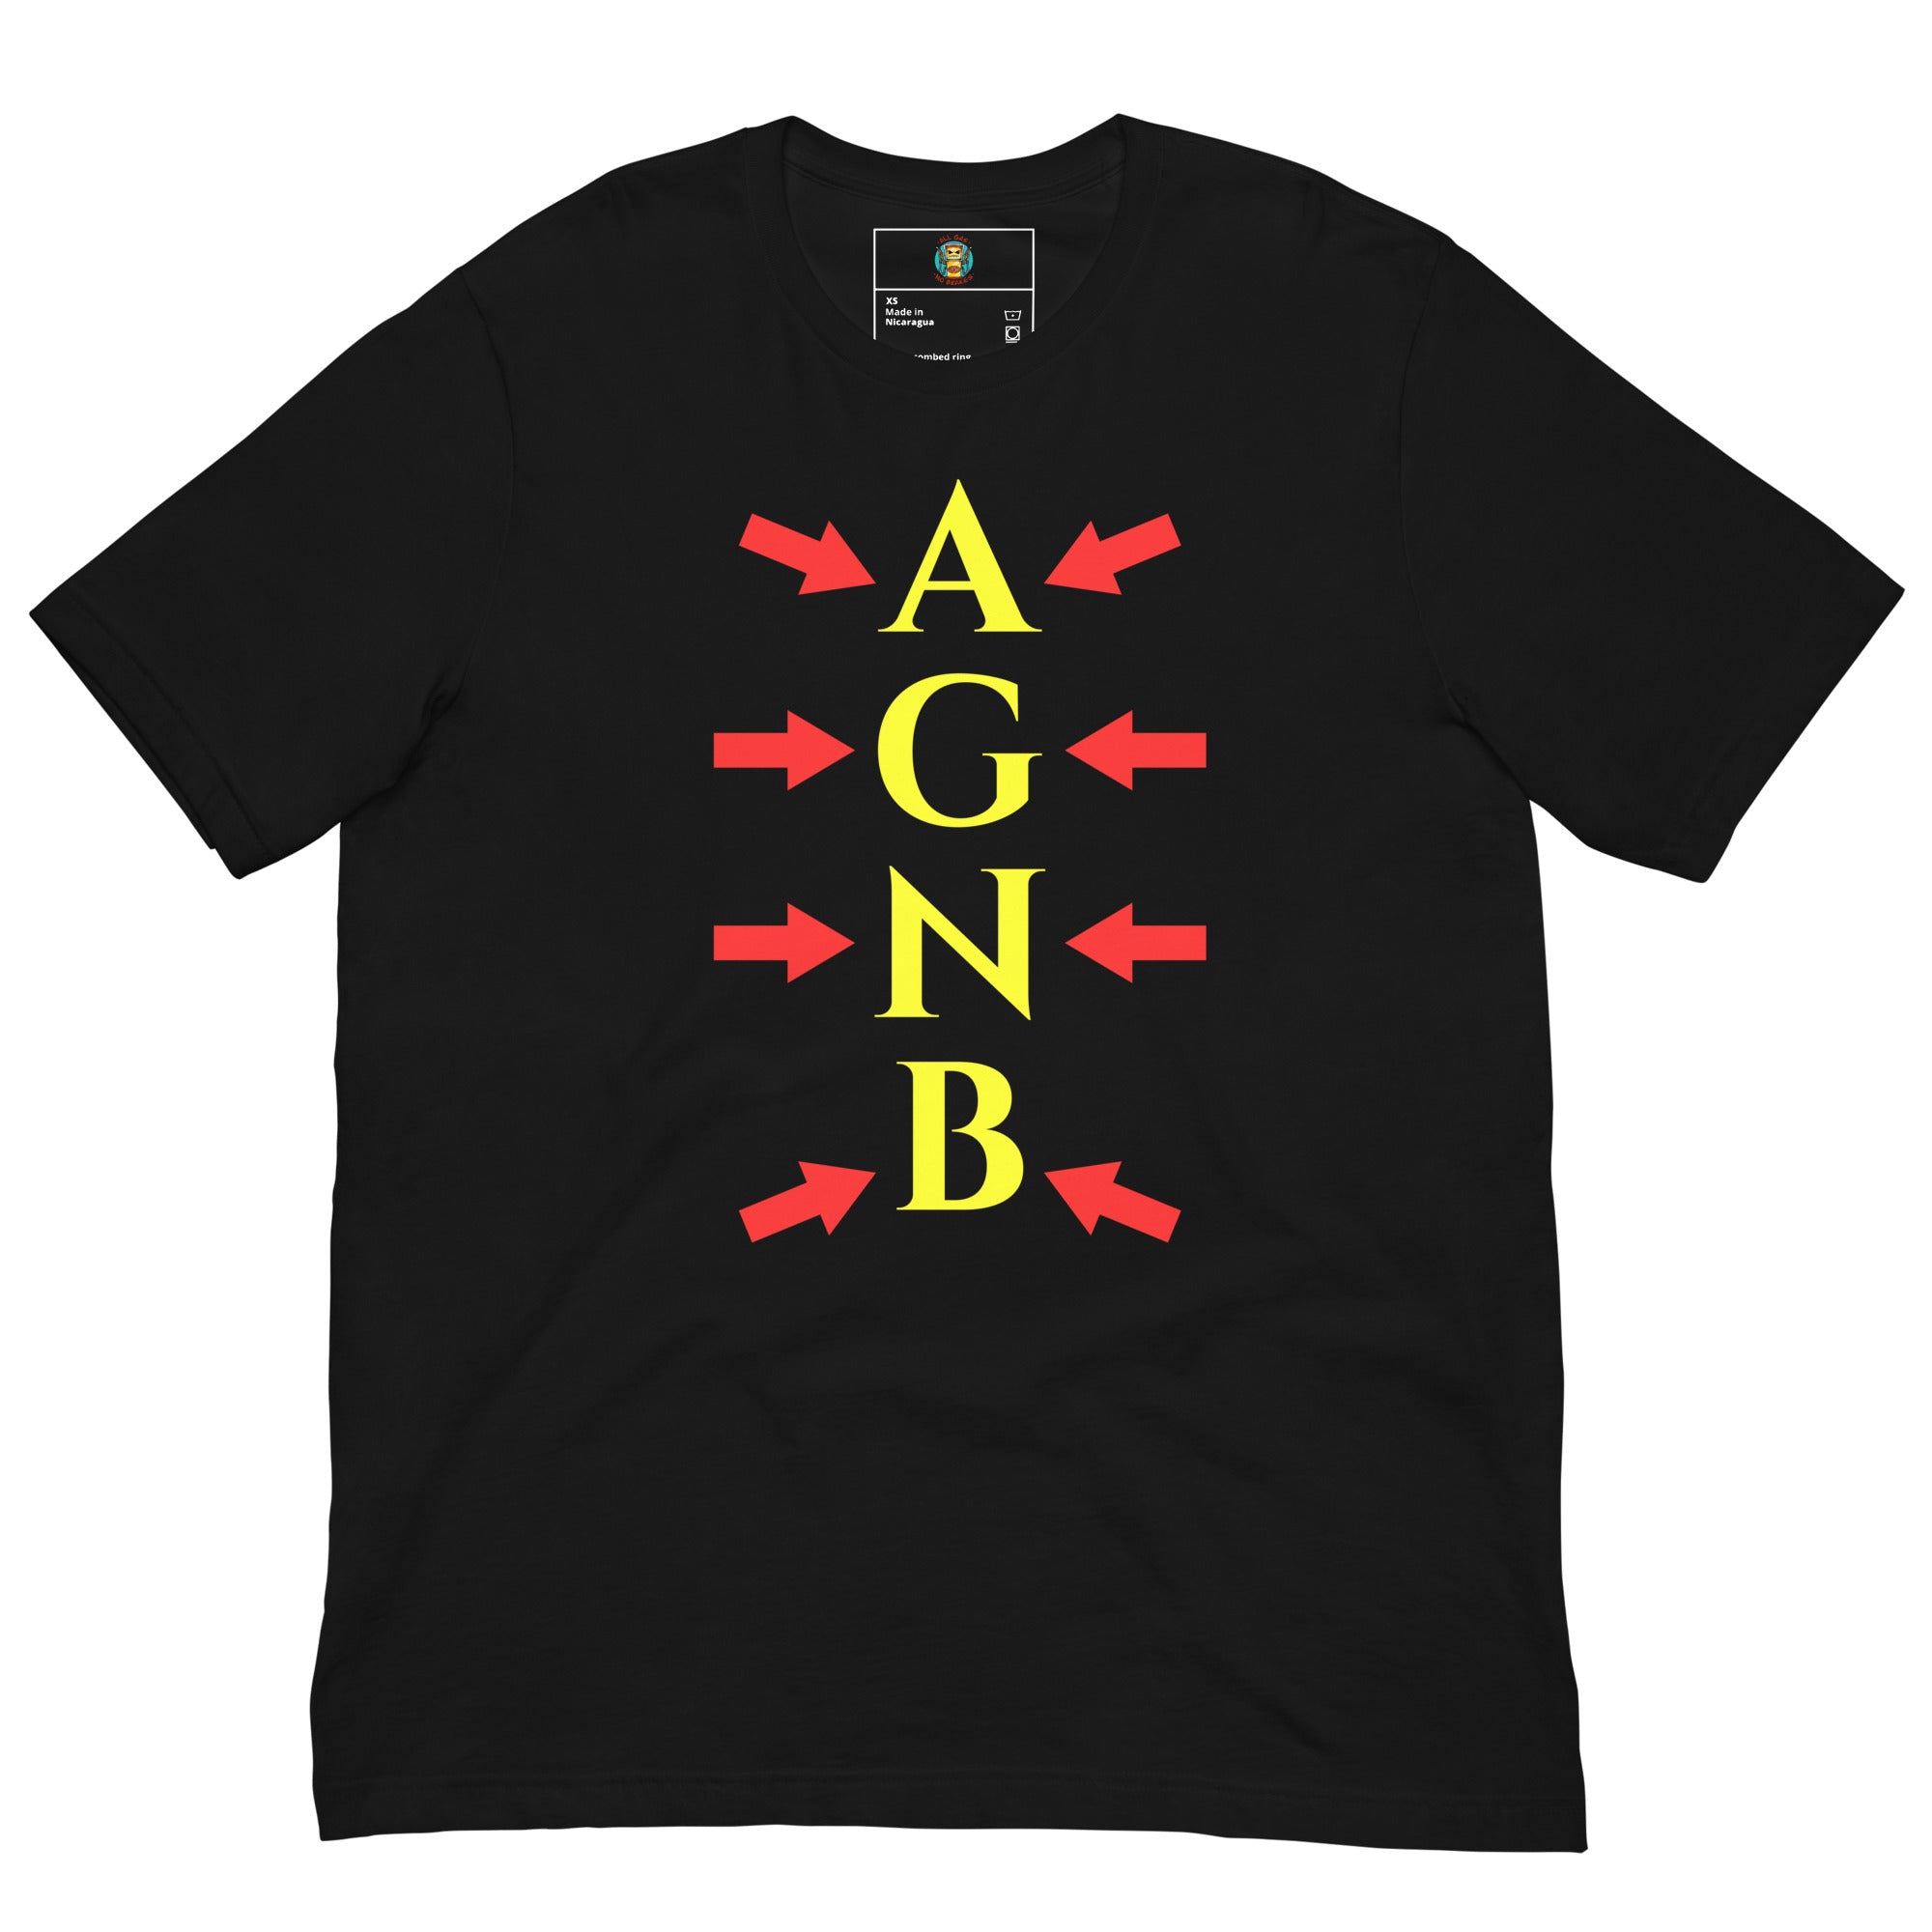 AGNB Shirts